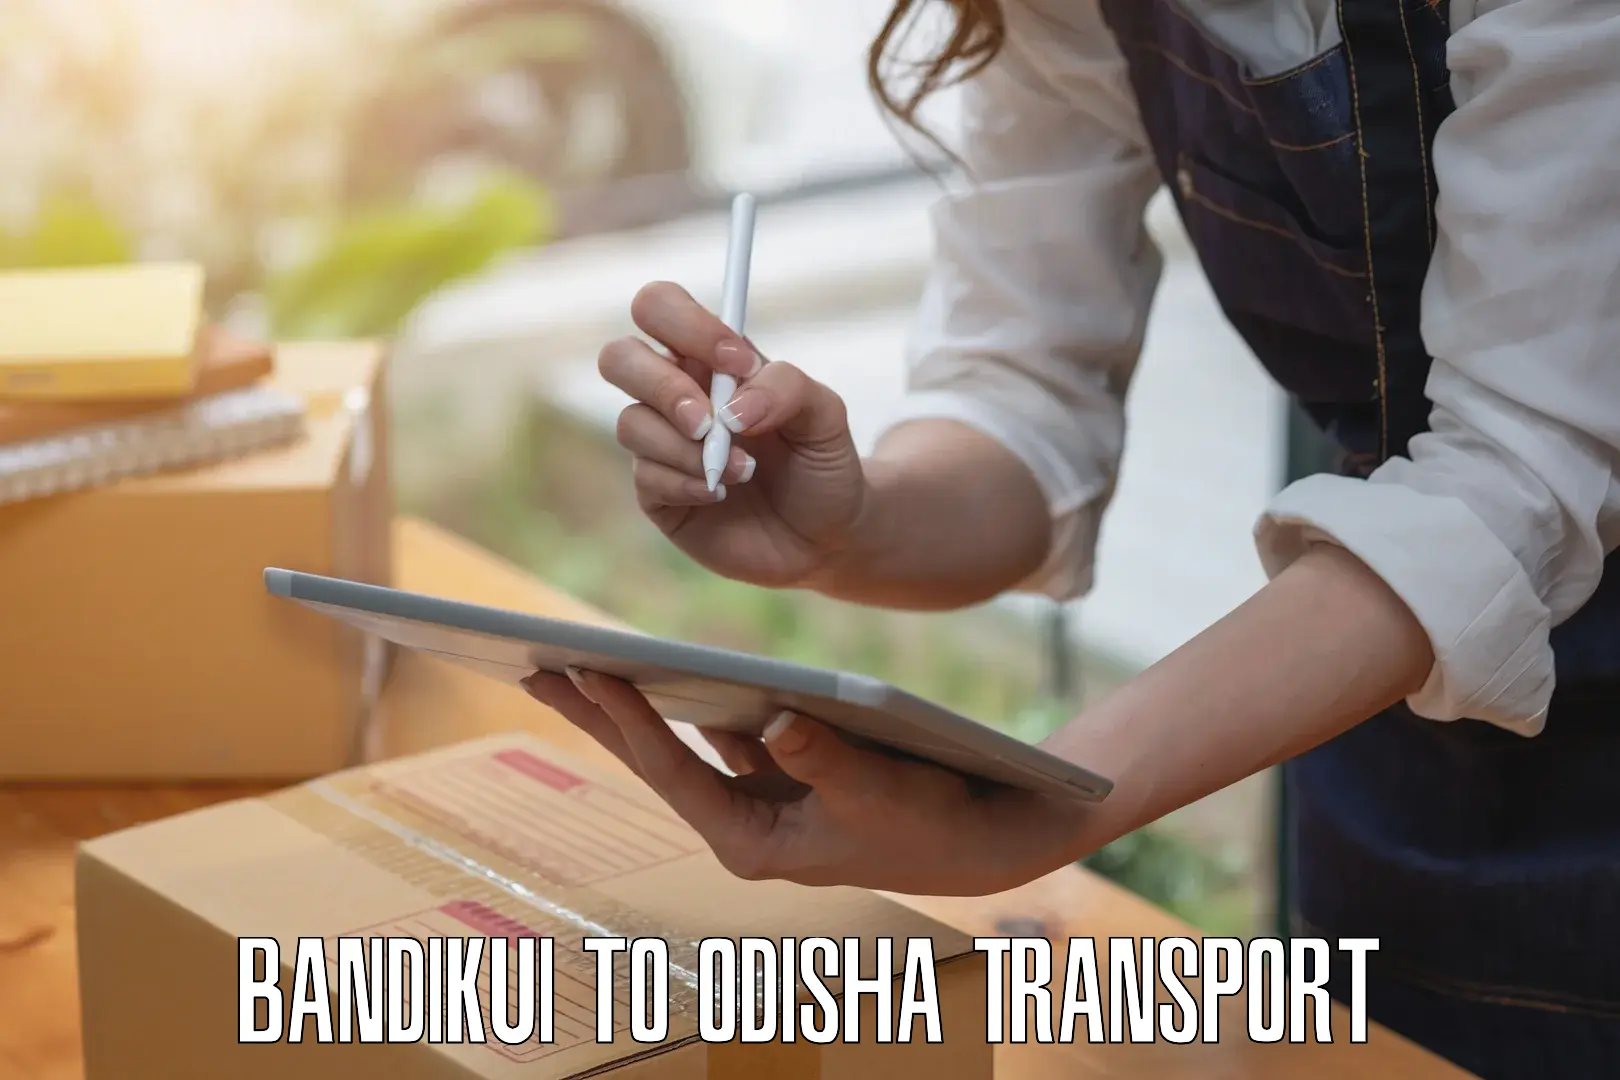 Cycle transportation service Bandikui to Odisha